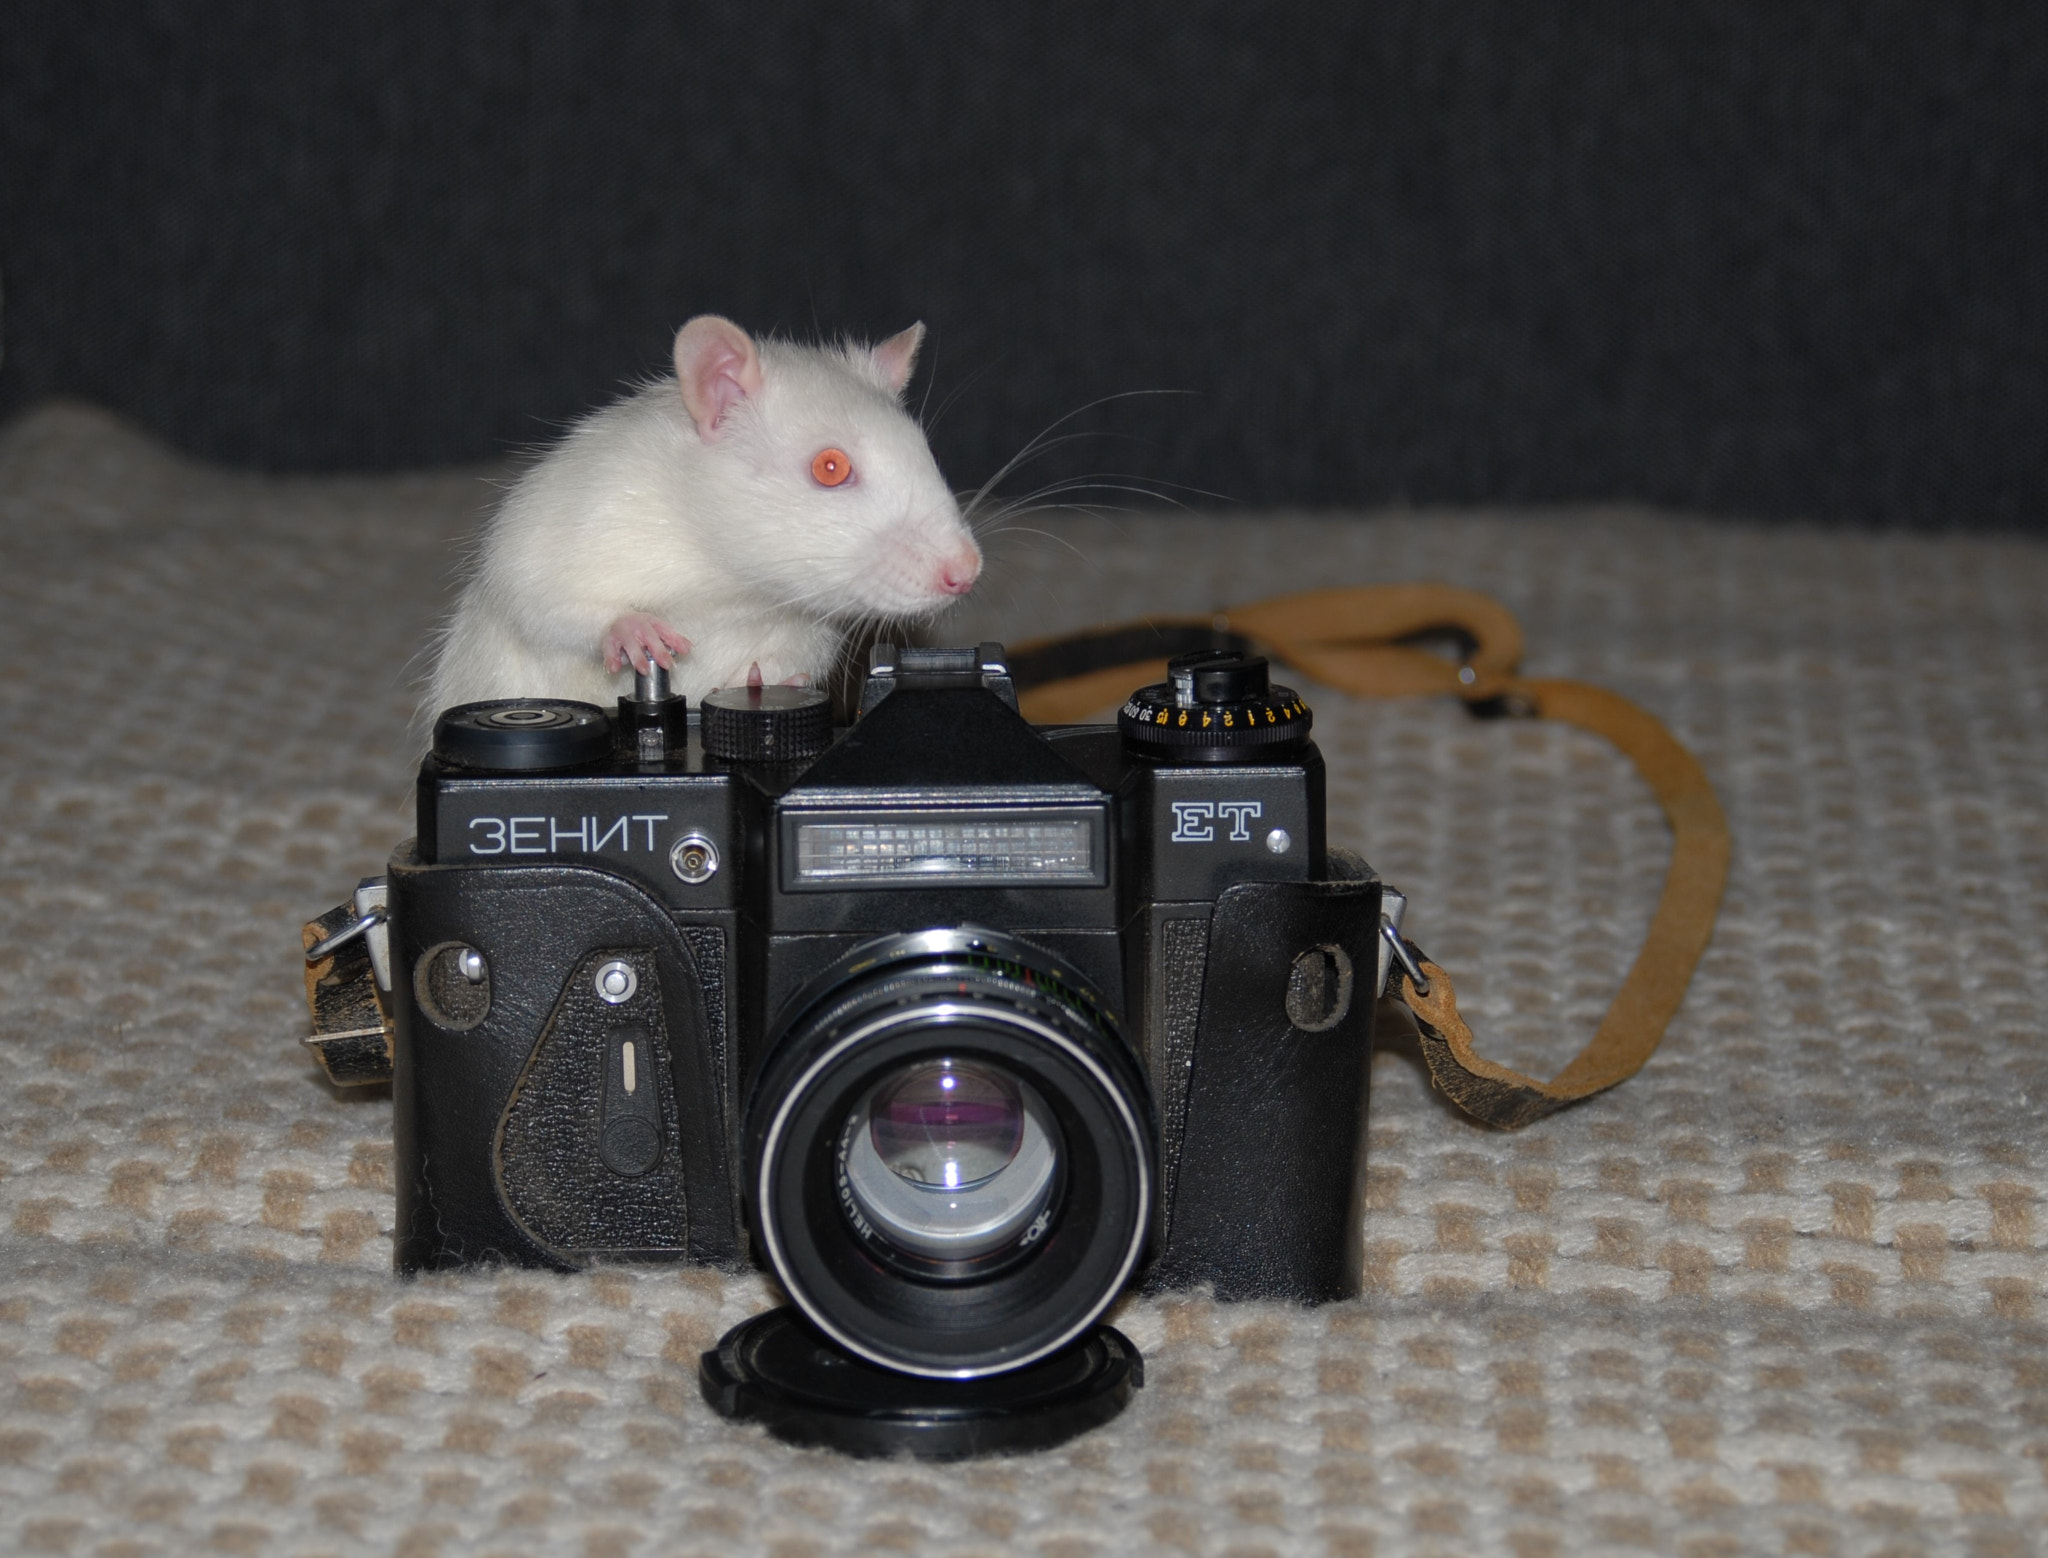 Nikon D200 sample photo. My pet filming me) photography